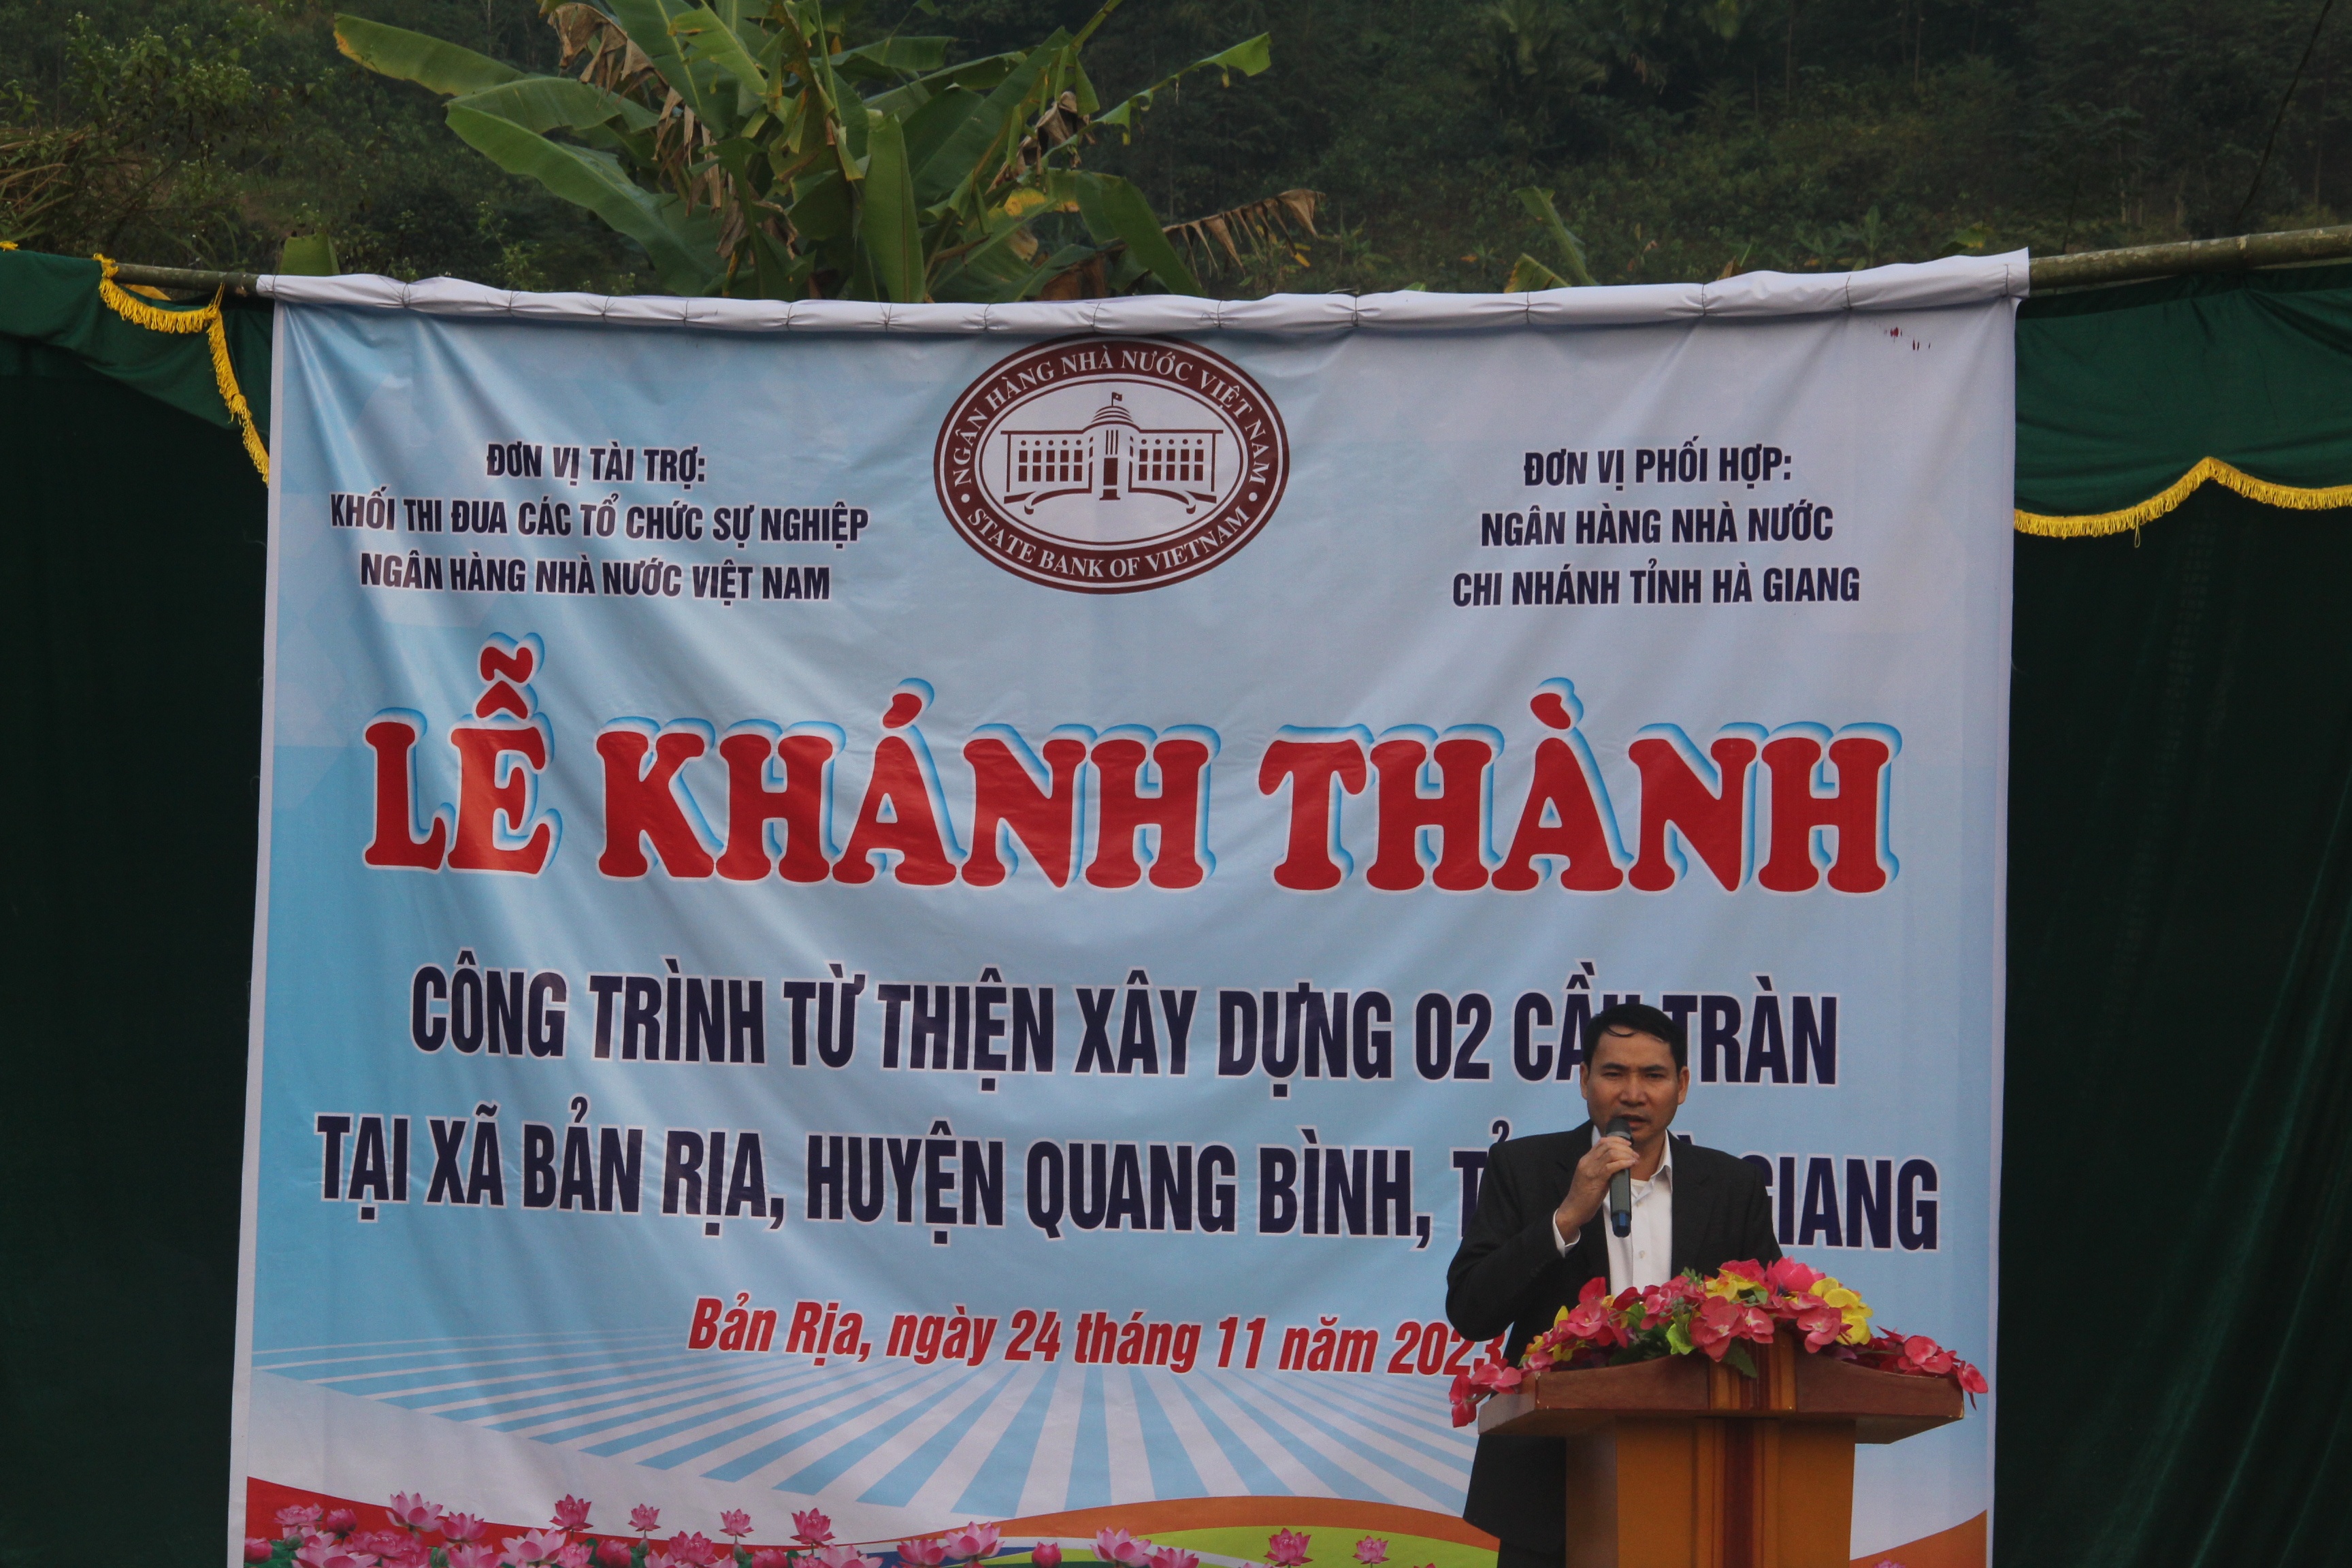 Ông Nguyễn Công Sự, Phó Bí thư Thường trực Huyện ủy, Chủ tịch HDND huyện Quang Bình phát biểu tại buổi lễ